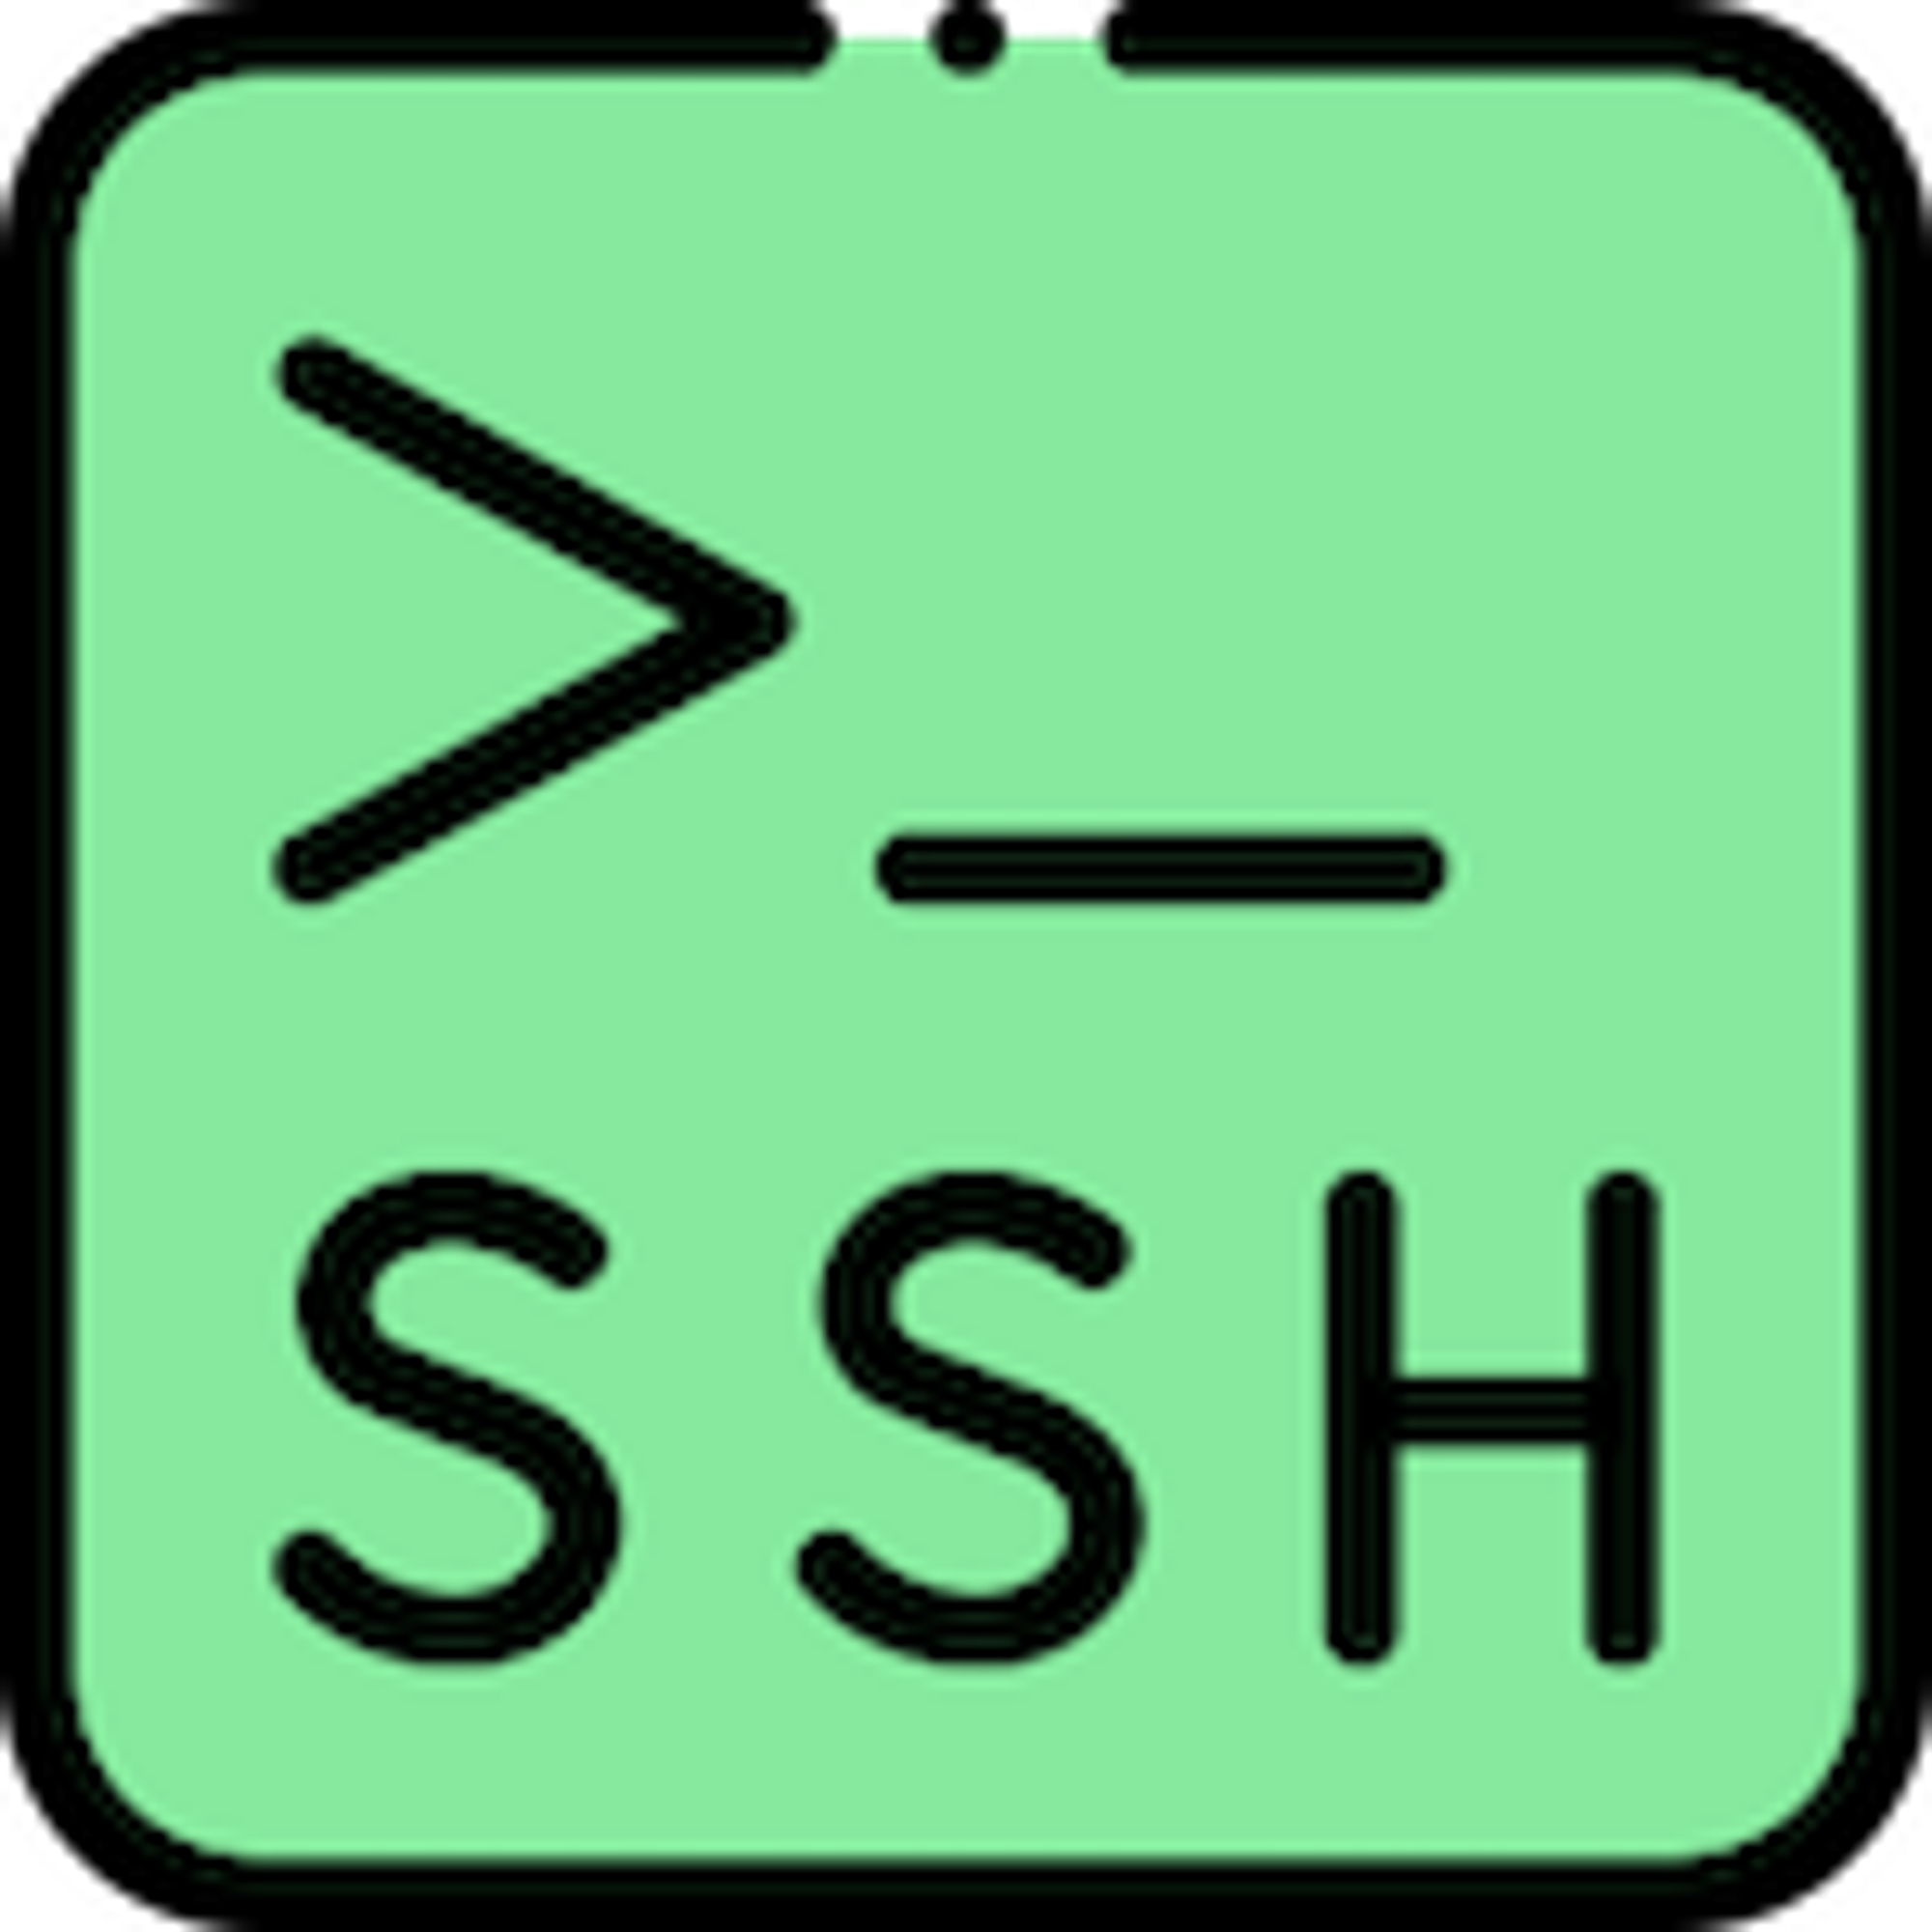 Set Up Password-less Authentication for SSH